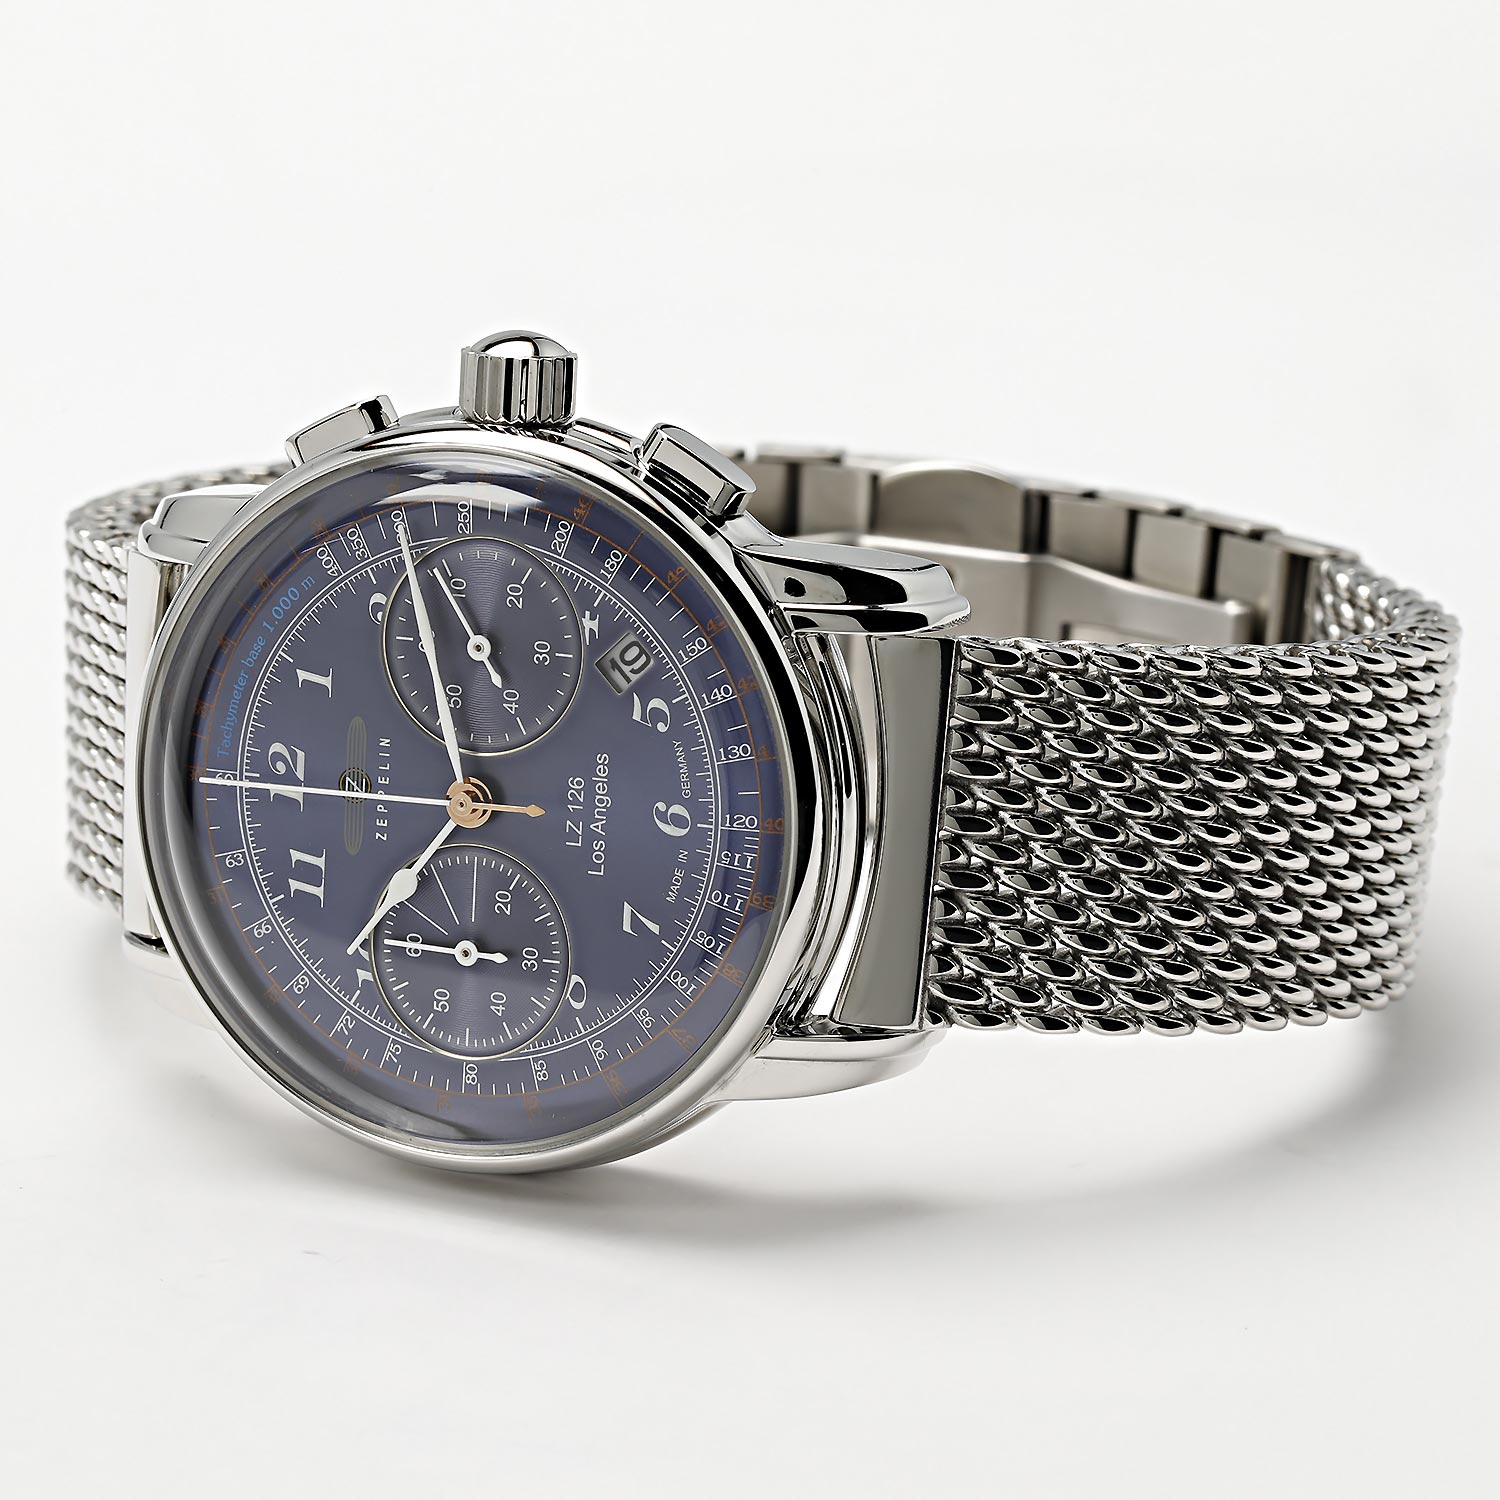 Наручные часы характеристики, лучшей AllTime.ru описание — инструкция, купить цене, ZEP-7614M3 в Zeppelin интернет-магазине по фото